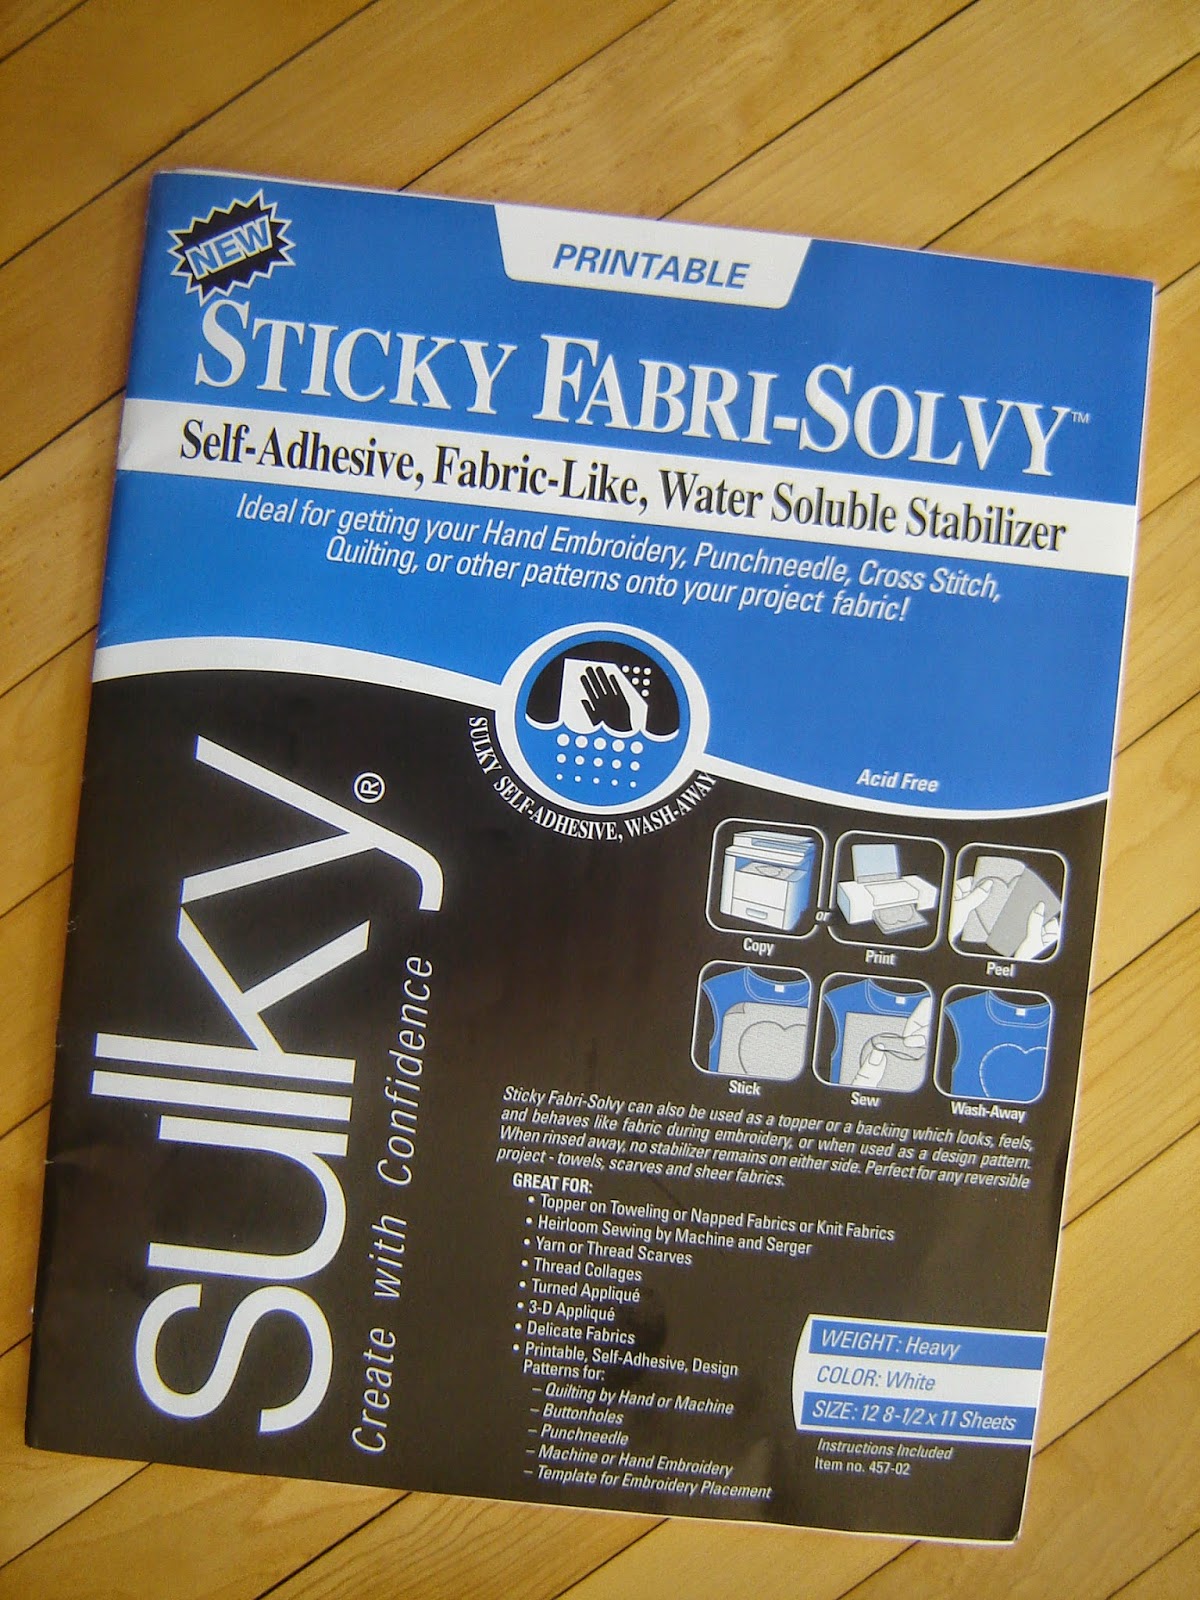 Sticky Fabri-Solvy – Blueberry Backroads